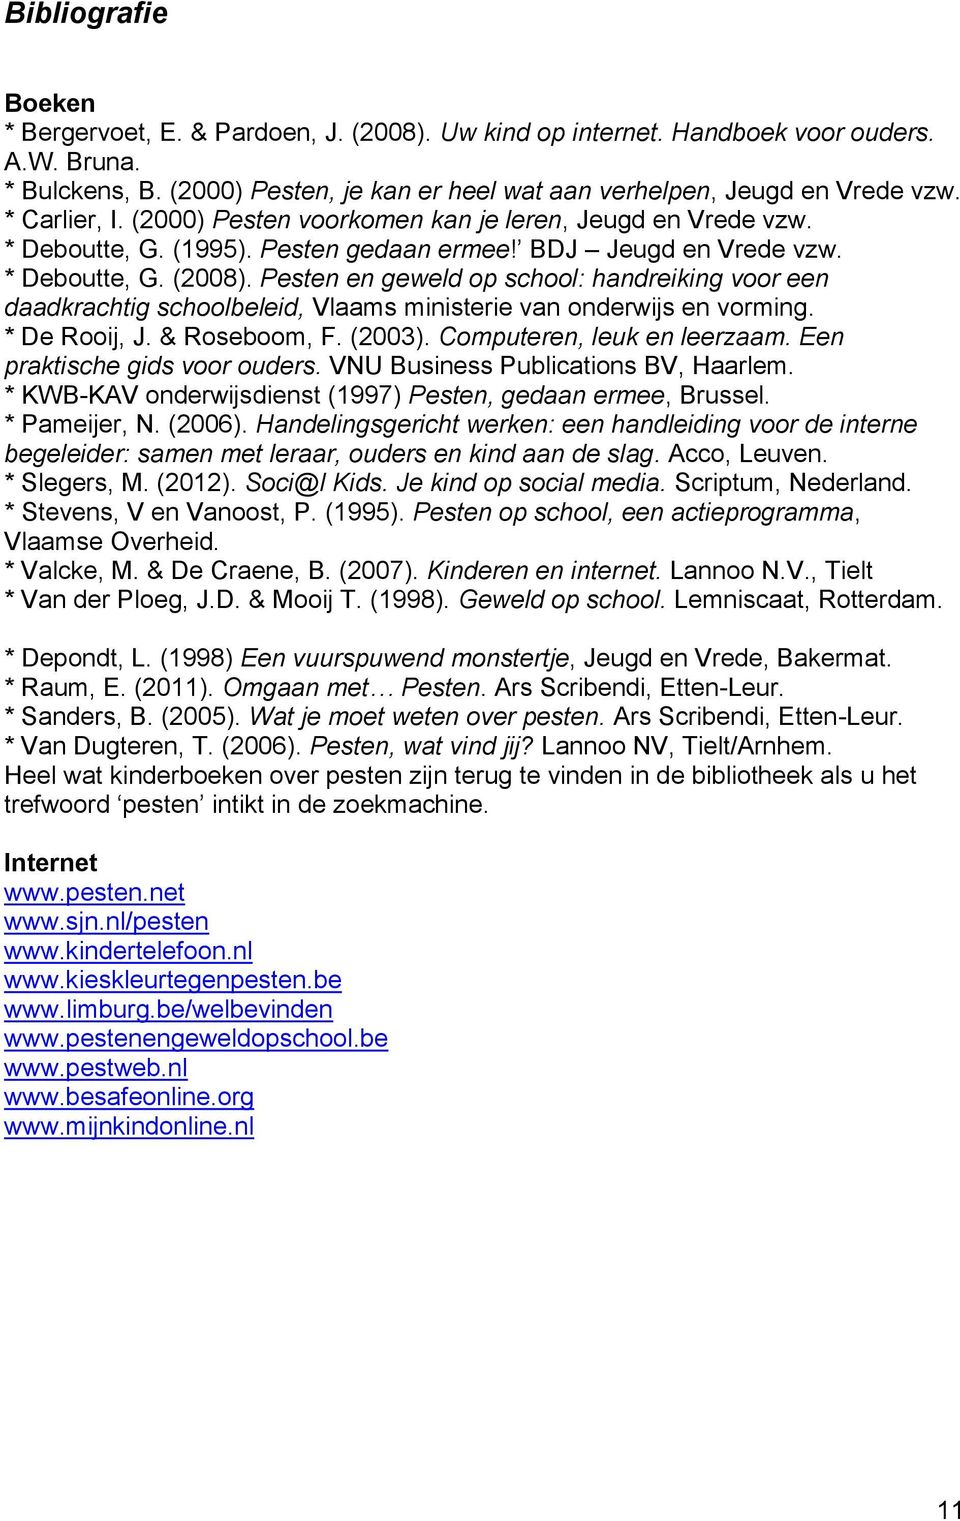 Pesten en geweld op school: handreiking voor een daadkrachtig schoolbeleid, Vlaams ministerie van onderwijs en vorming. * De Rooij, J. & Roseboom, F. (2003). Computeren, leuk en leerzaam.